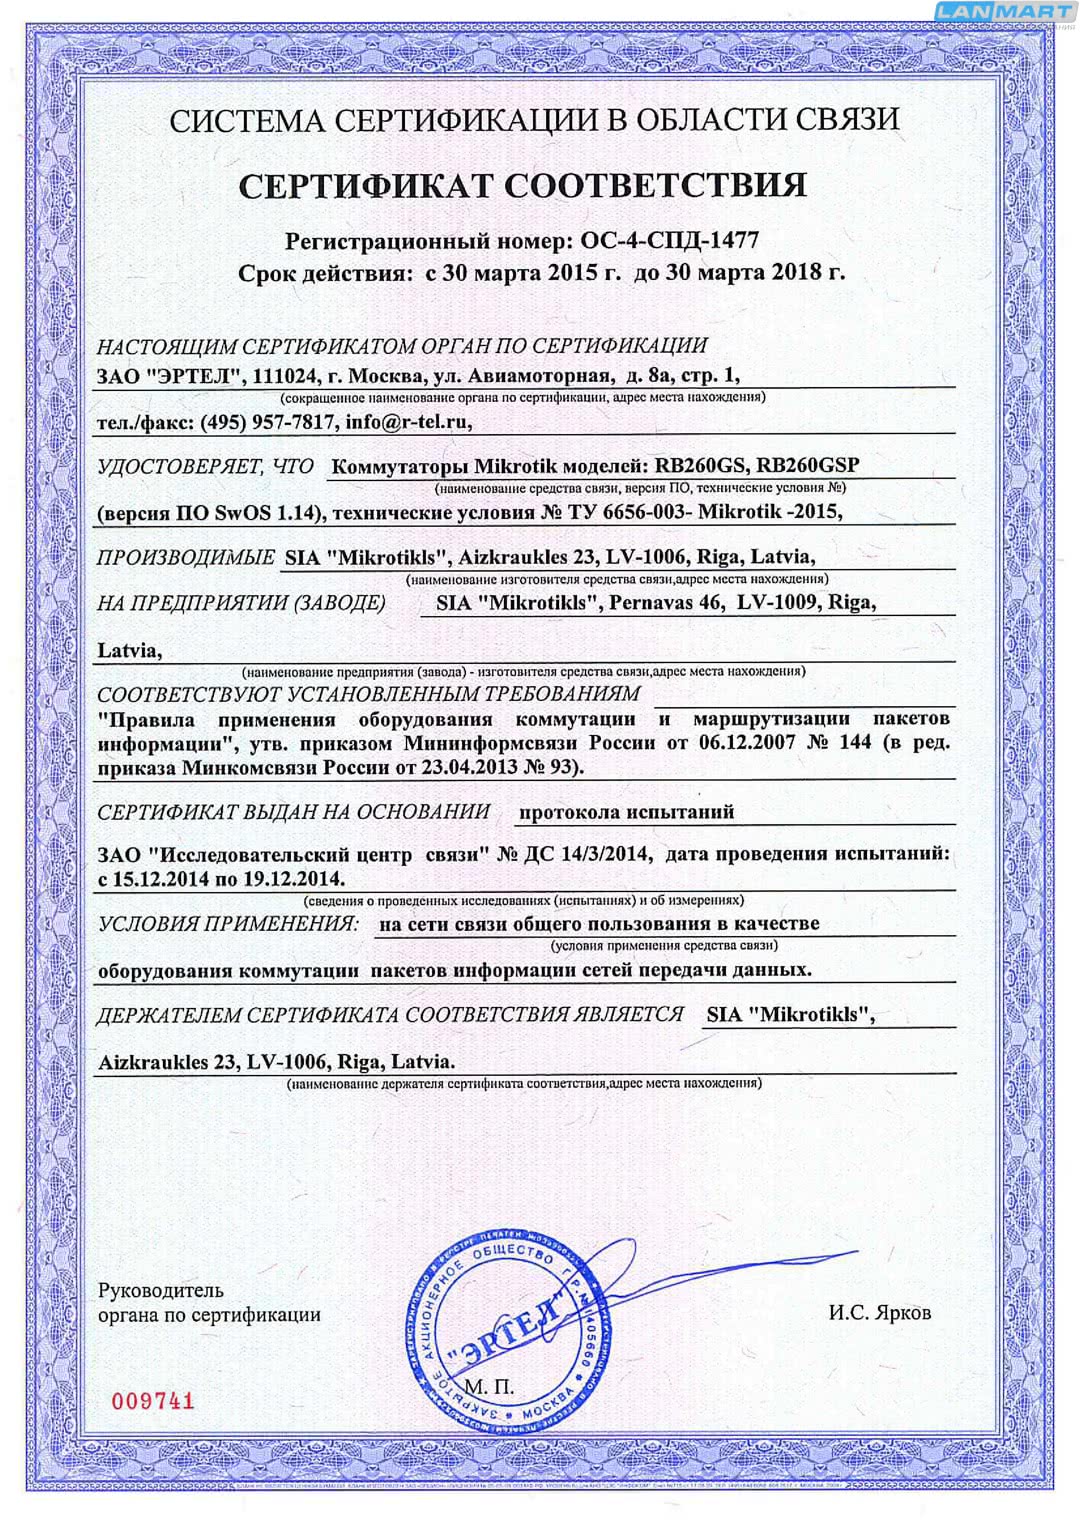 Mikrotik сертификат ССС